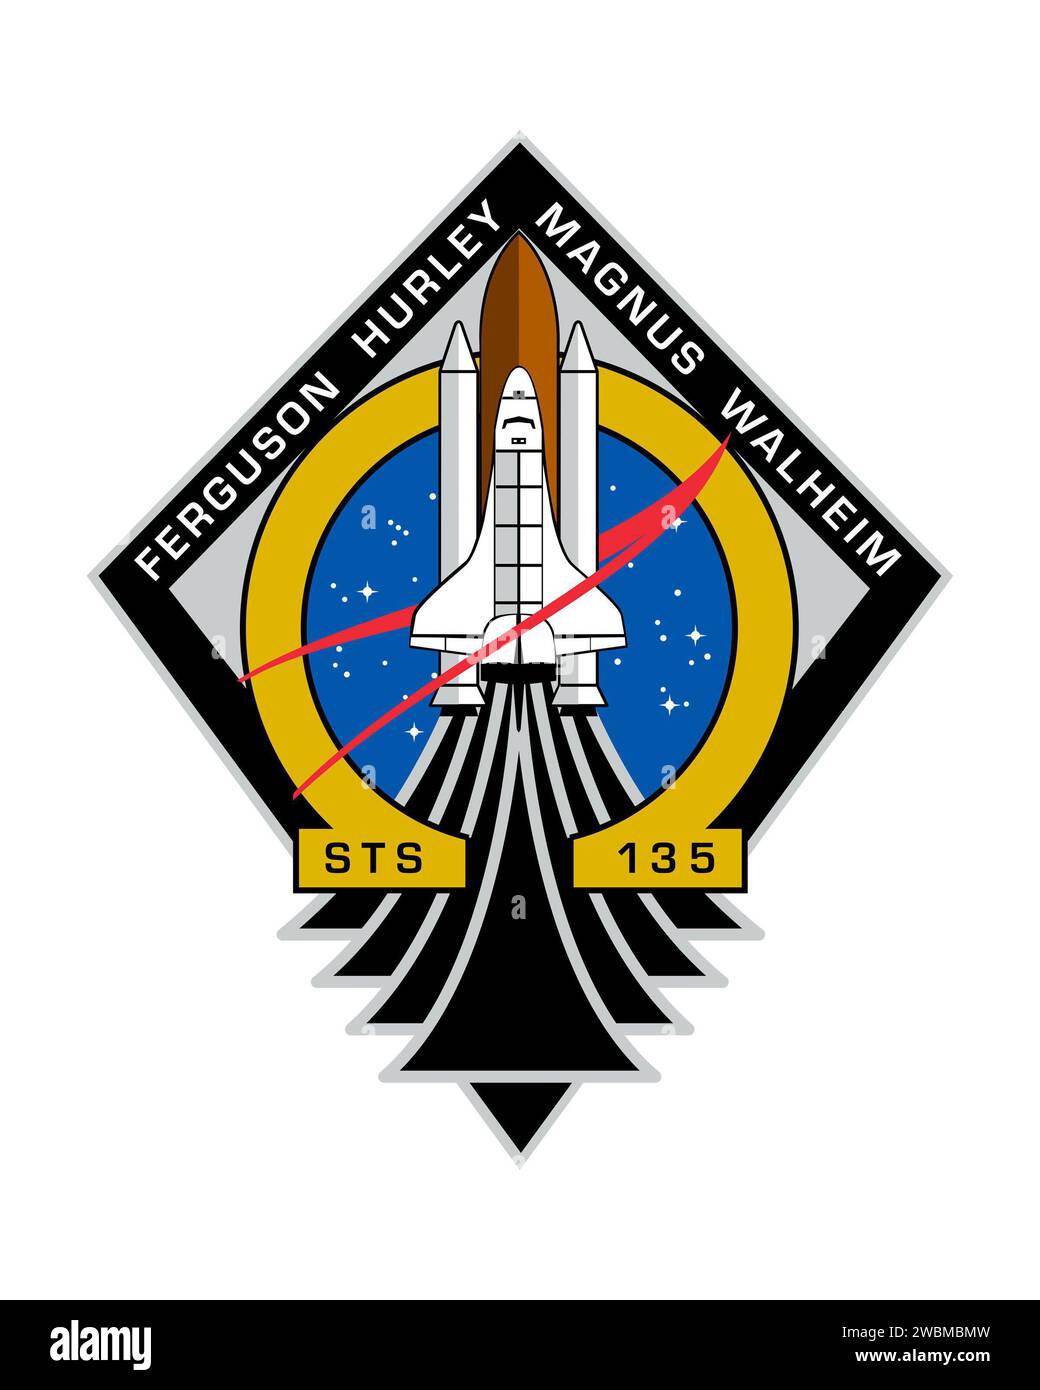 JOHNSON SPACE CENTER, Houston - STS135-S-001 -- der STS-135 Patch repräsentiert das Raumschiff Atlantis, das seine Mission zur Versorgung der Internationalen Raumstation aufnimmt. Atlantis konzentriert sich auf Elemente des NASA-Emblems, die zeigen, wie das Space Shuttle seit 30 Jahren das Herz der NASA bildet. Es zollt auch der gesamten NASA und dem Auftragnehmer-Team Tribut, das all die unglaublichen Leistungen des Space Shuttle ermöglicht hat. Omega, der letzte Buchstabe im griechischen Alphabet, erkennt diese Mission als den letzten Flug des Space Shuttle-Programms an. Die öffentliche Verfügbarkeit war App Stockfoto